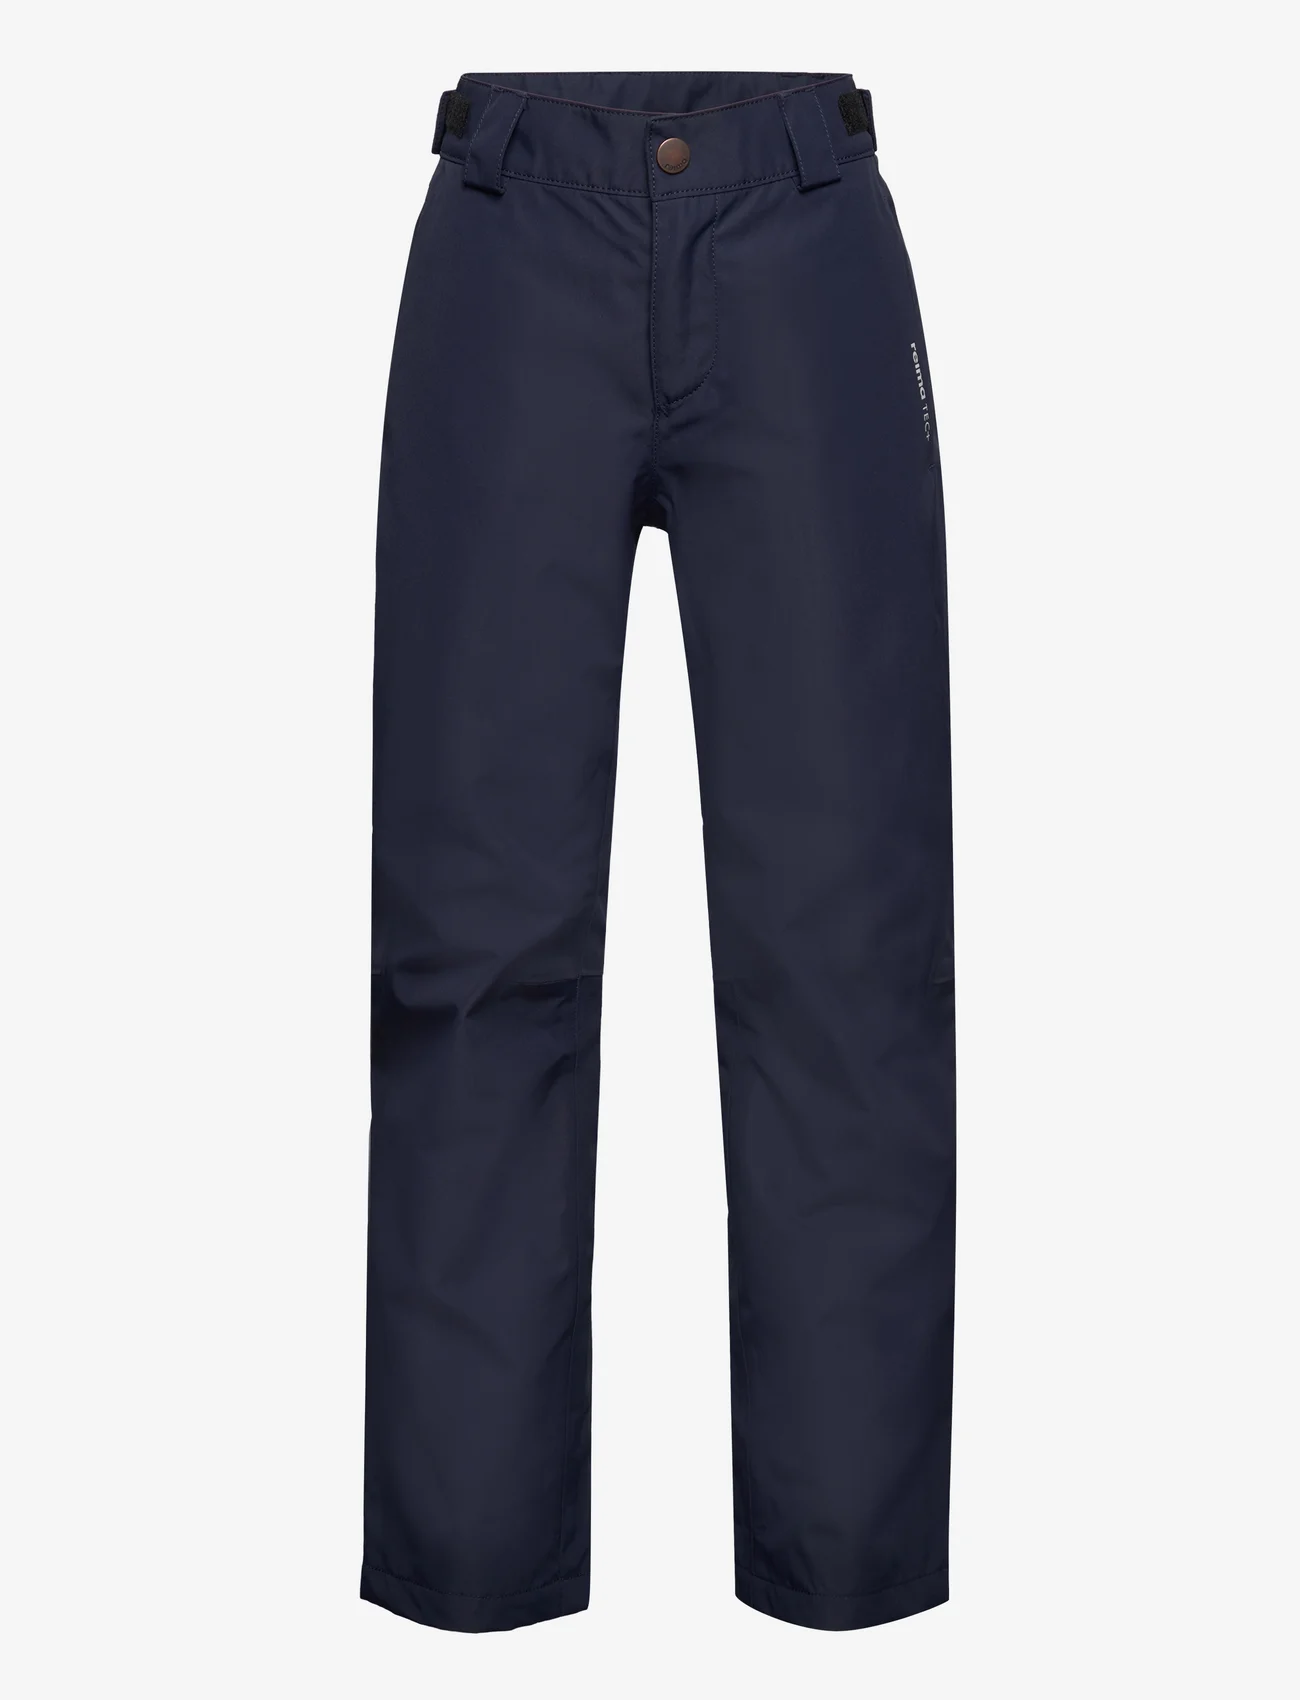 Reima - Reimatec pants, Kierto - outdoorhosen - navy - 0